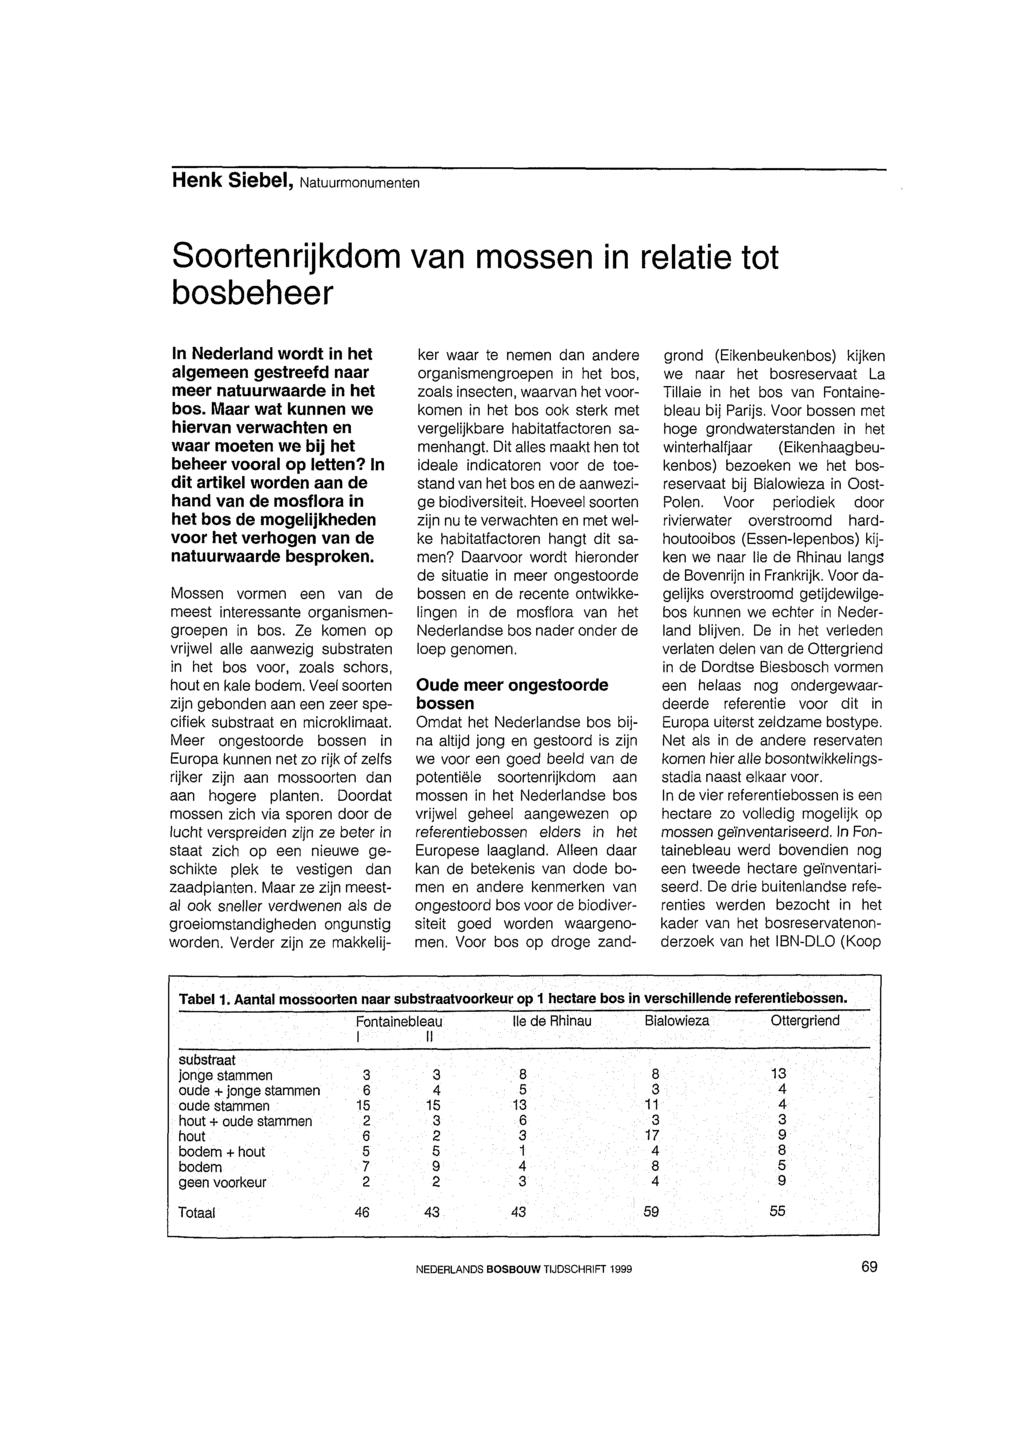 Soortenrijkdom van mossen in relatie tot bosbeheer In Nederland wordt in het algemeen gestreefd naar meer natuurwaarde in het bos.